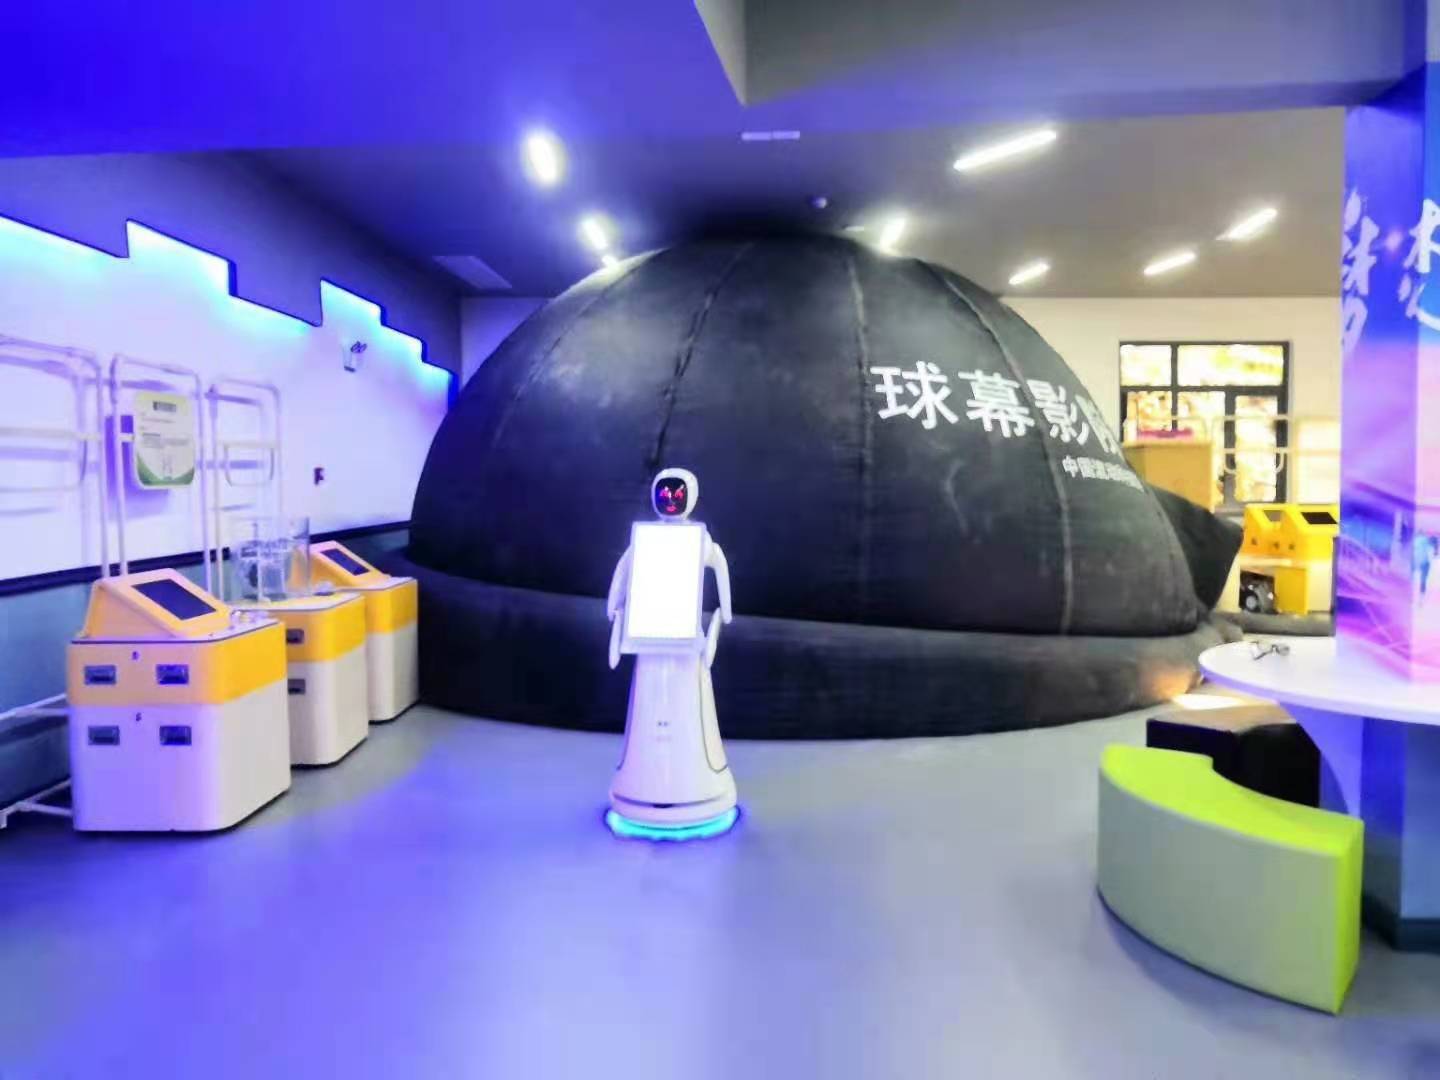 扬州展馆讲解机器人接待服务